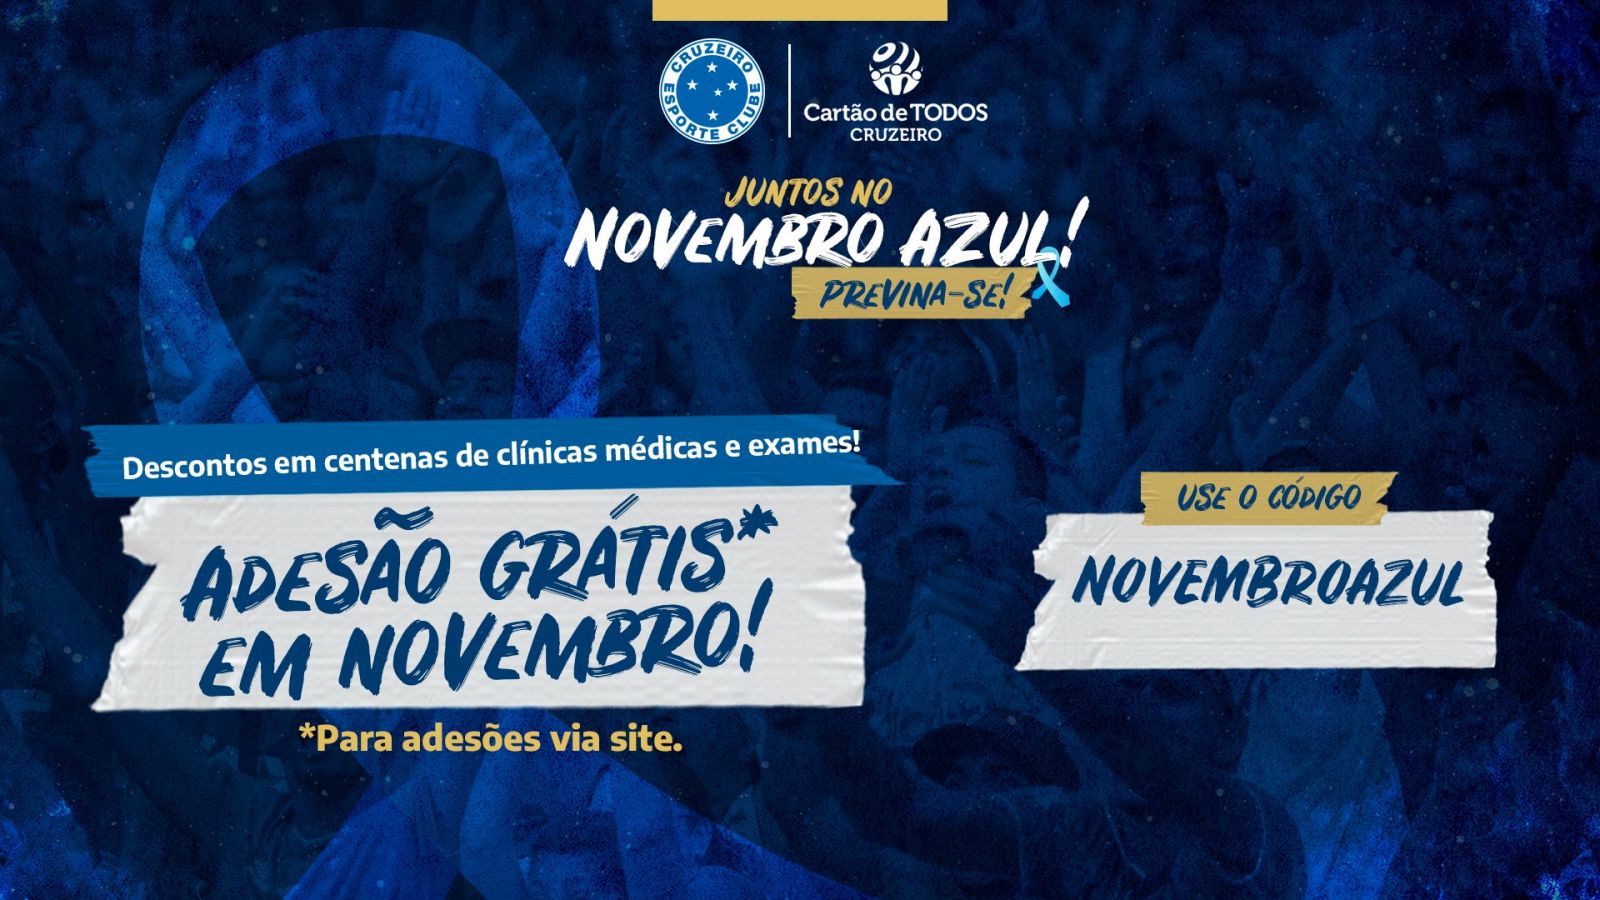 Em apoio à campanha de prevenção ao câncer de próstata, Cartão de TODOS Cruzeiro tem adesão gratuita em novembro